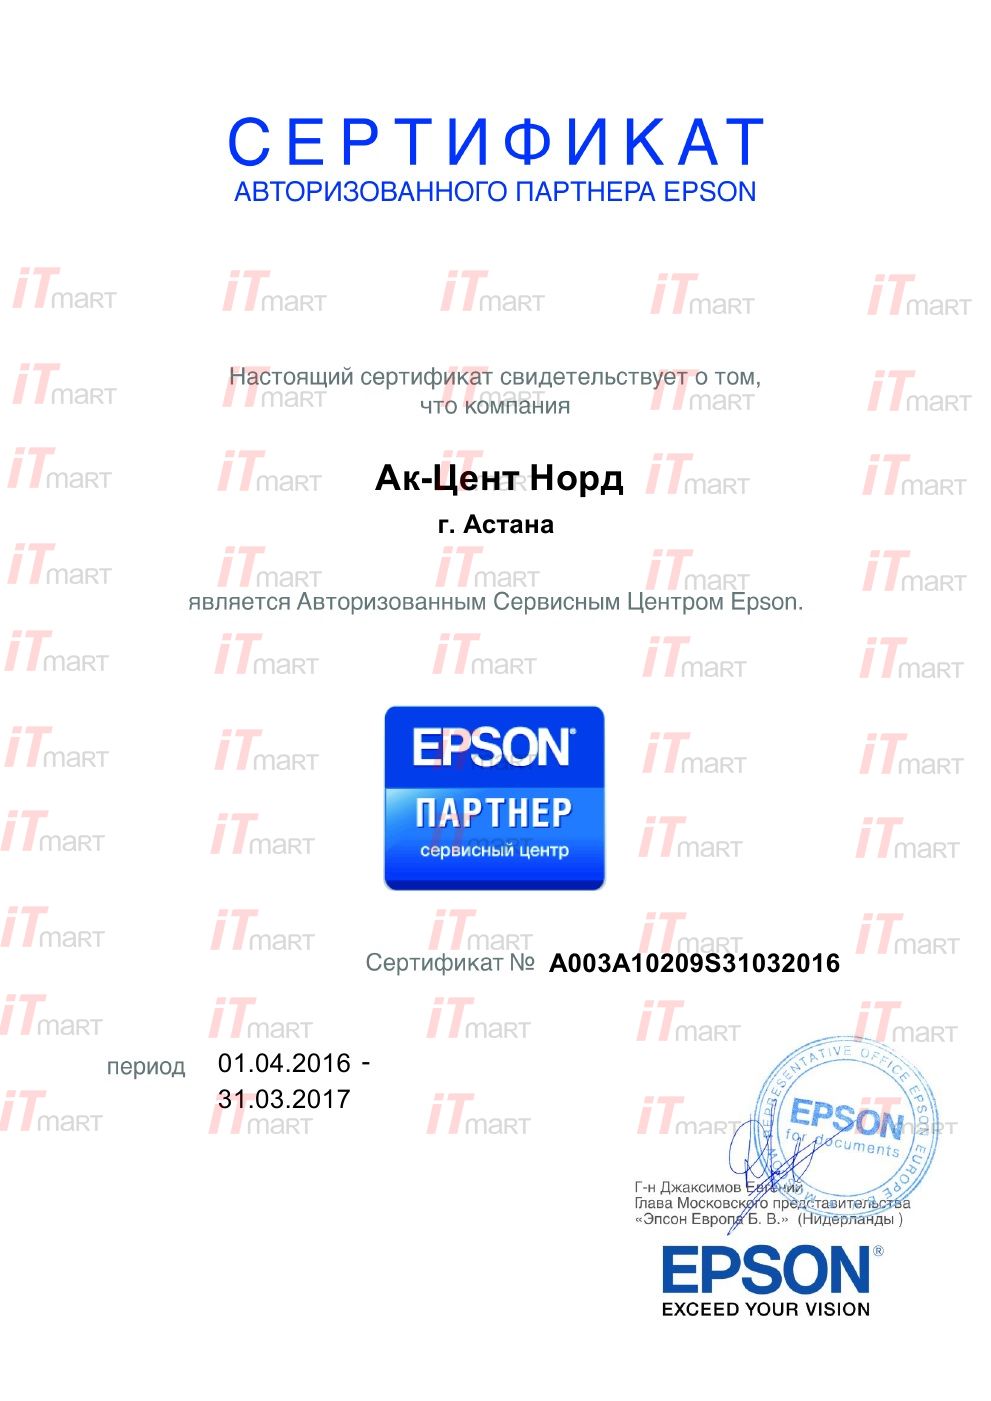 Партнер Epson в Казахстане